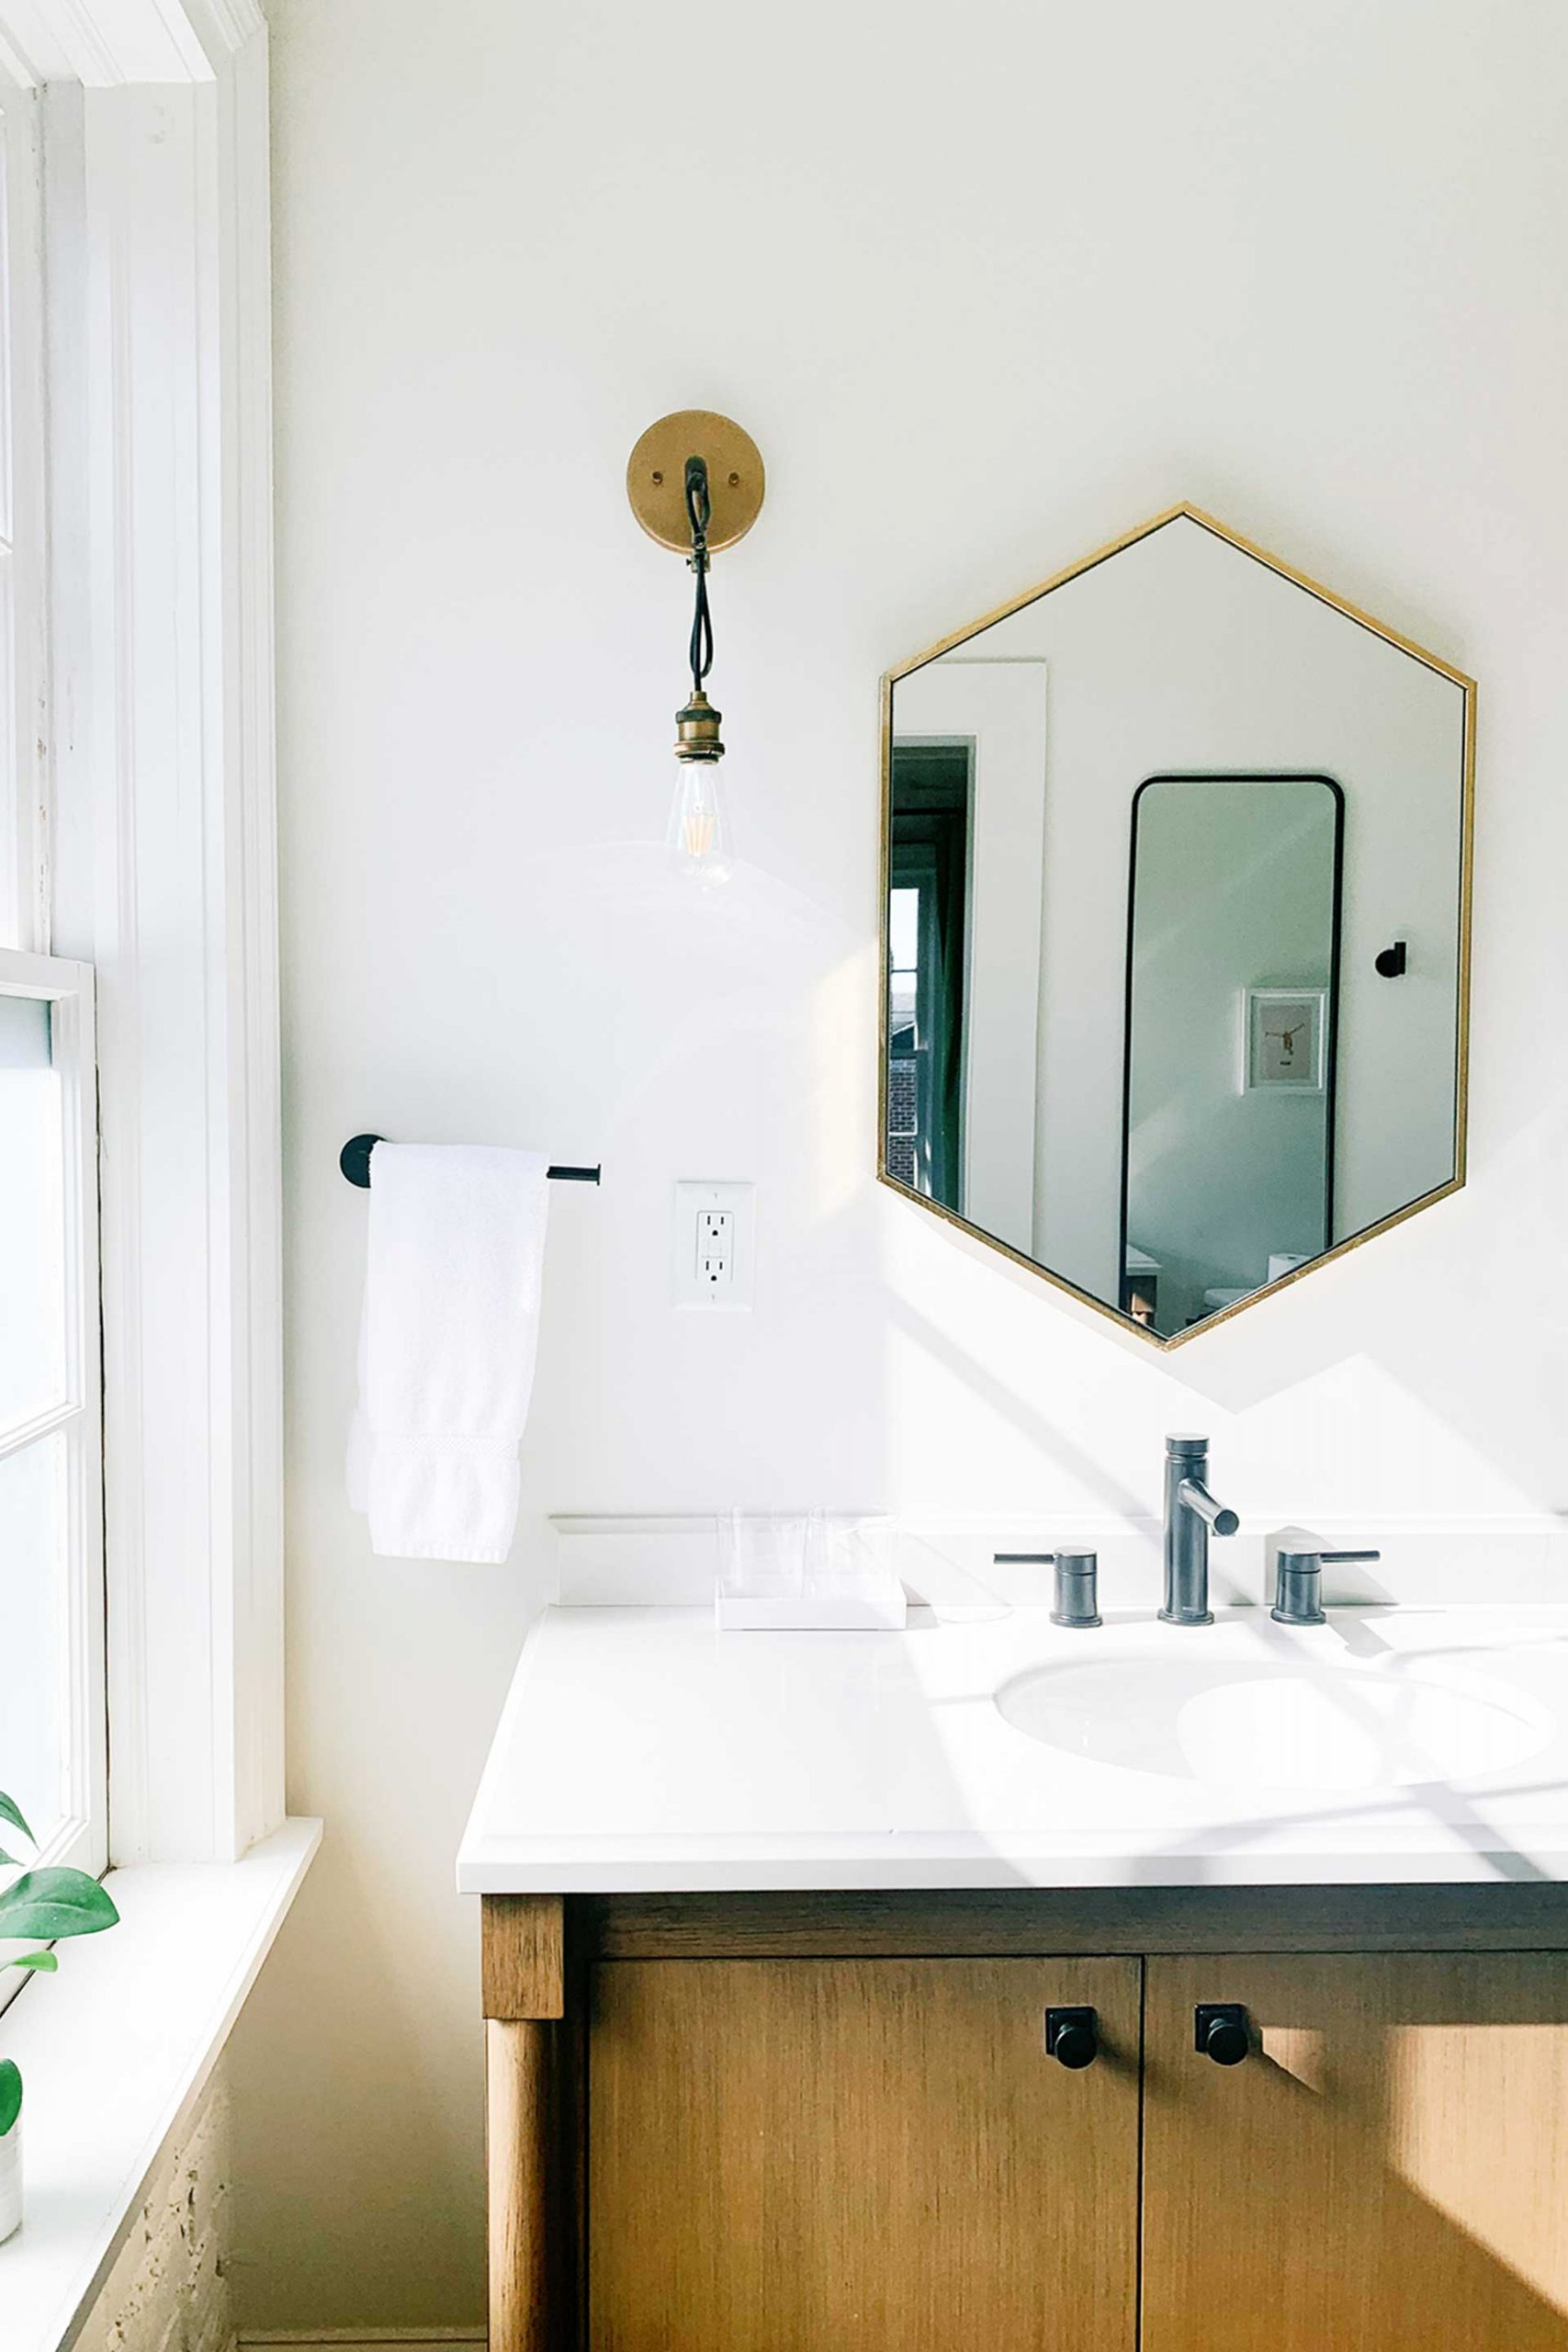 Entdecke die besten Badezimmer-Organizer und schaffe Ordnung im Bad. Nutze kreative Aufbewahrungsideen und Ordnungssysteme für ein aufgeräumtes Badezimmer.